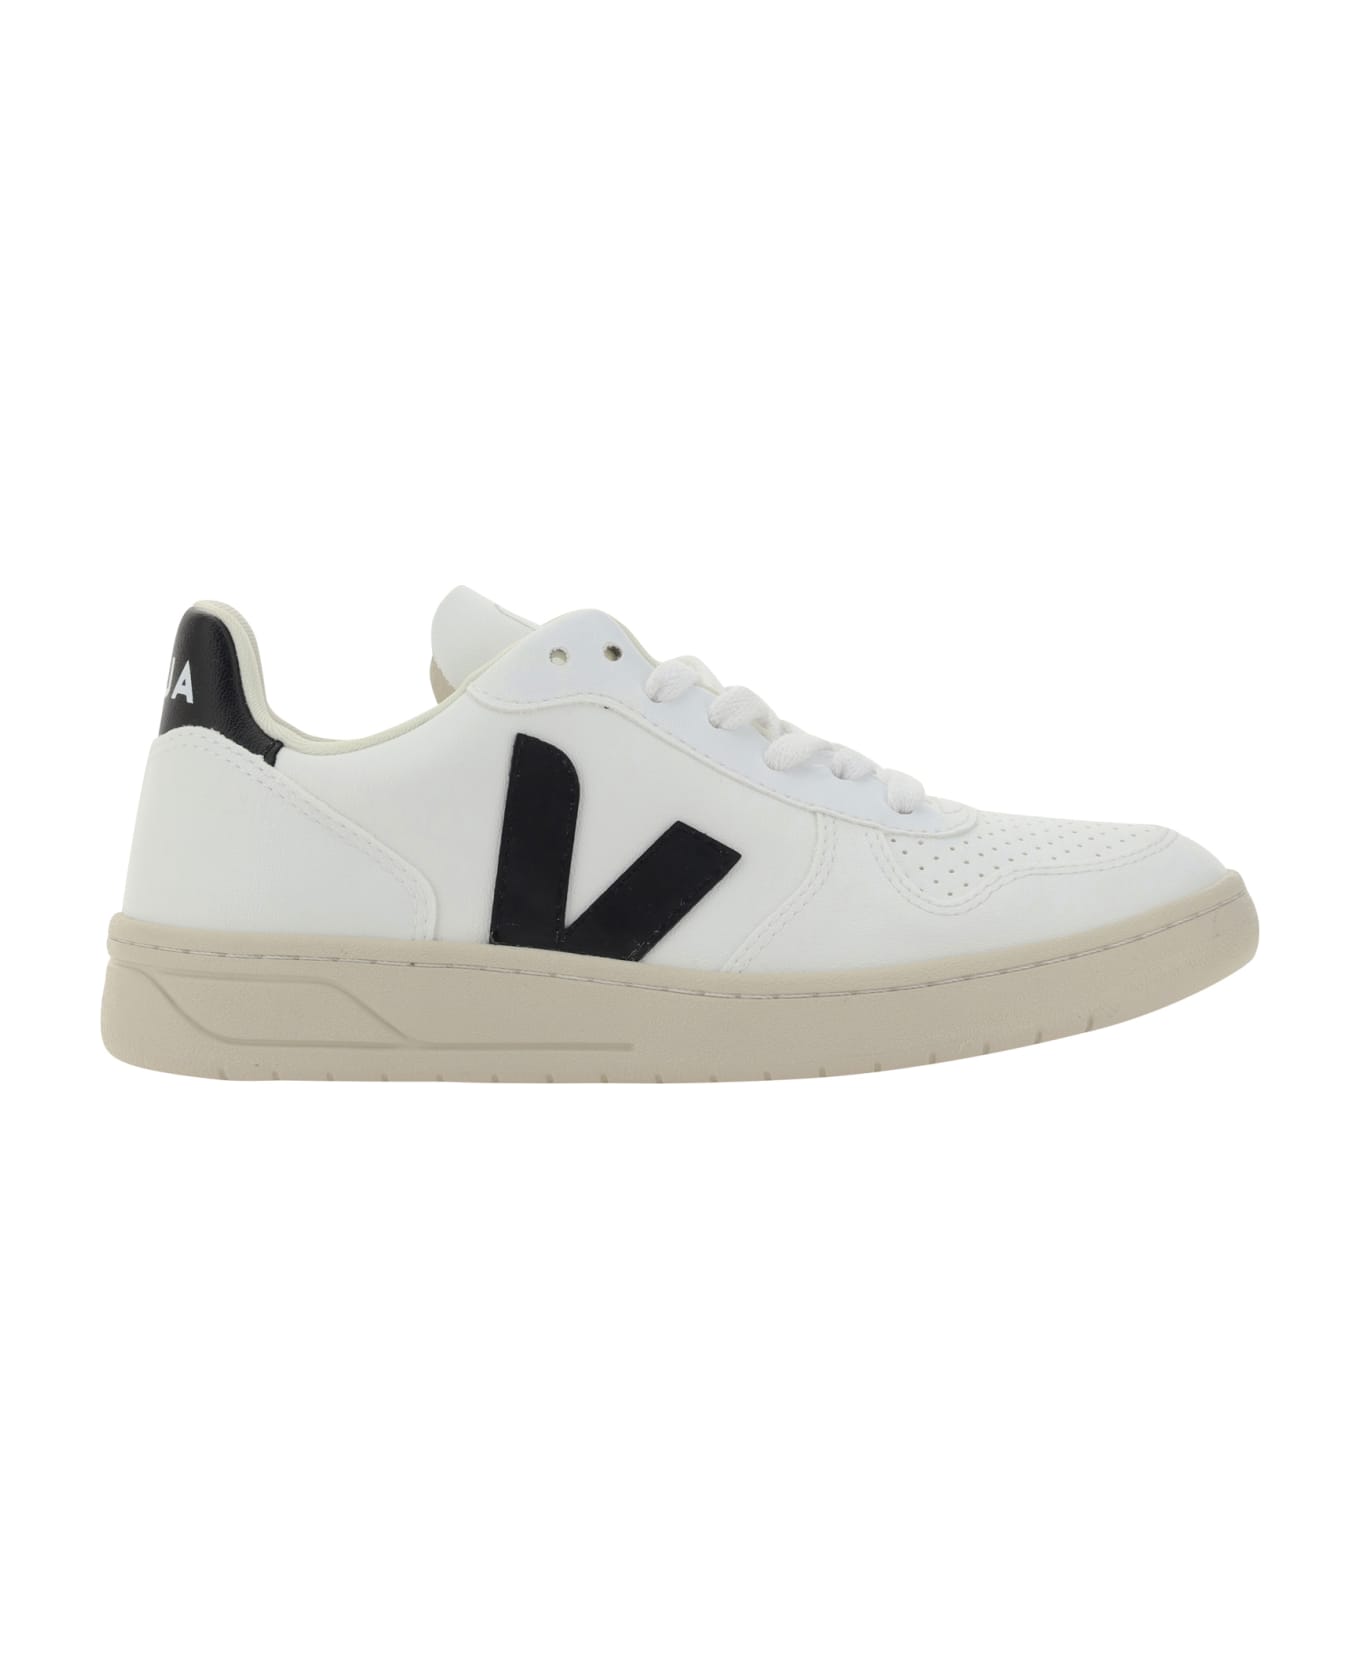 Veja Sneakers - White/black スニーカー